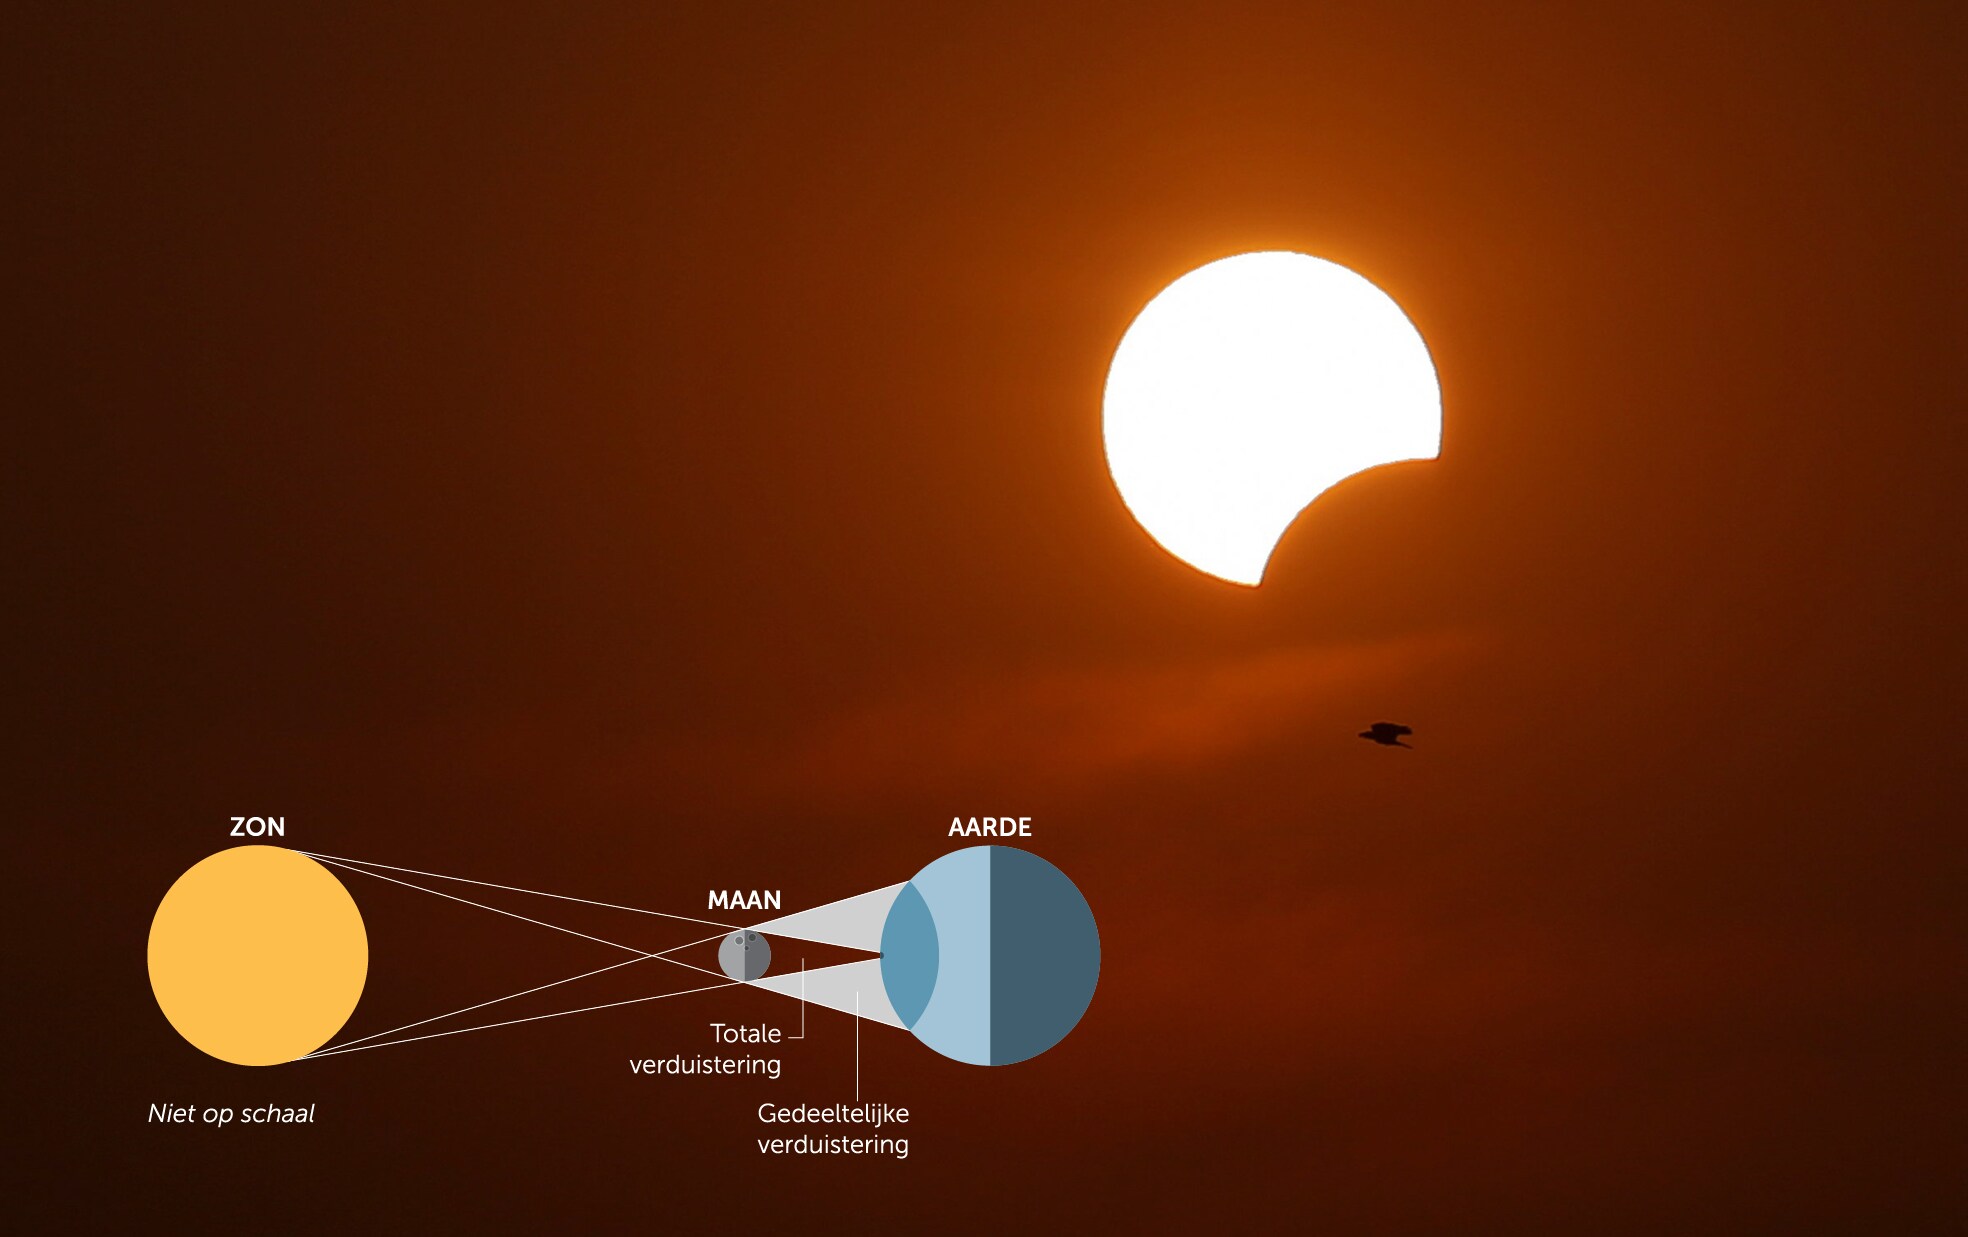 De maan bijt vanmiddag een klein stukje uit de zon. Wat fascineert ons zo aan een zonsverduistering?